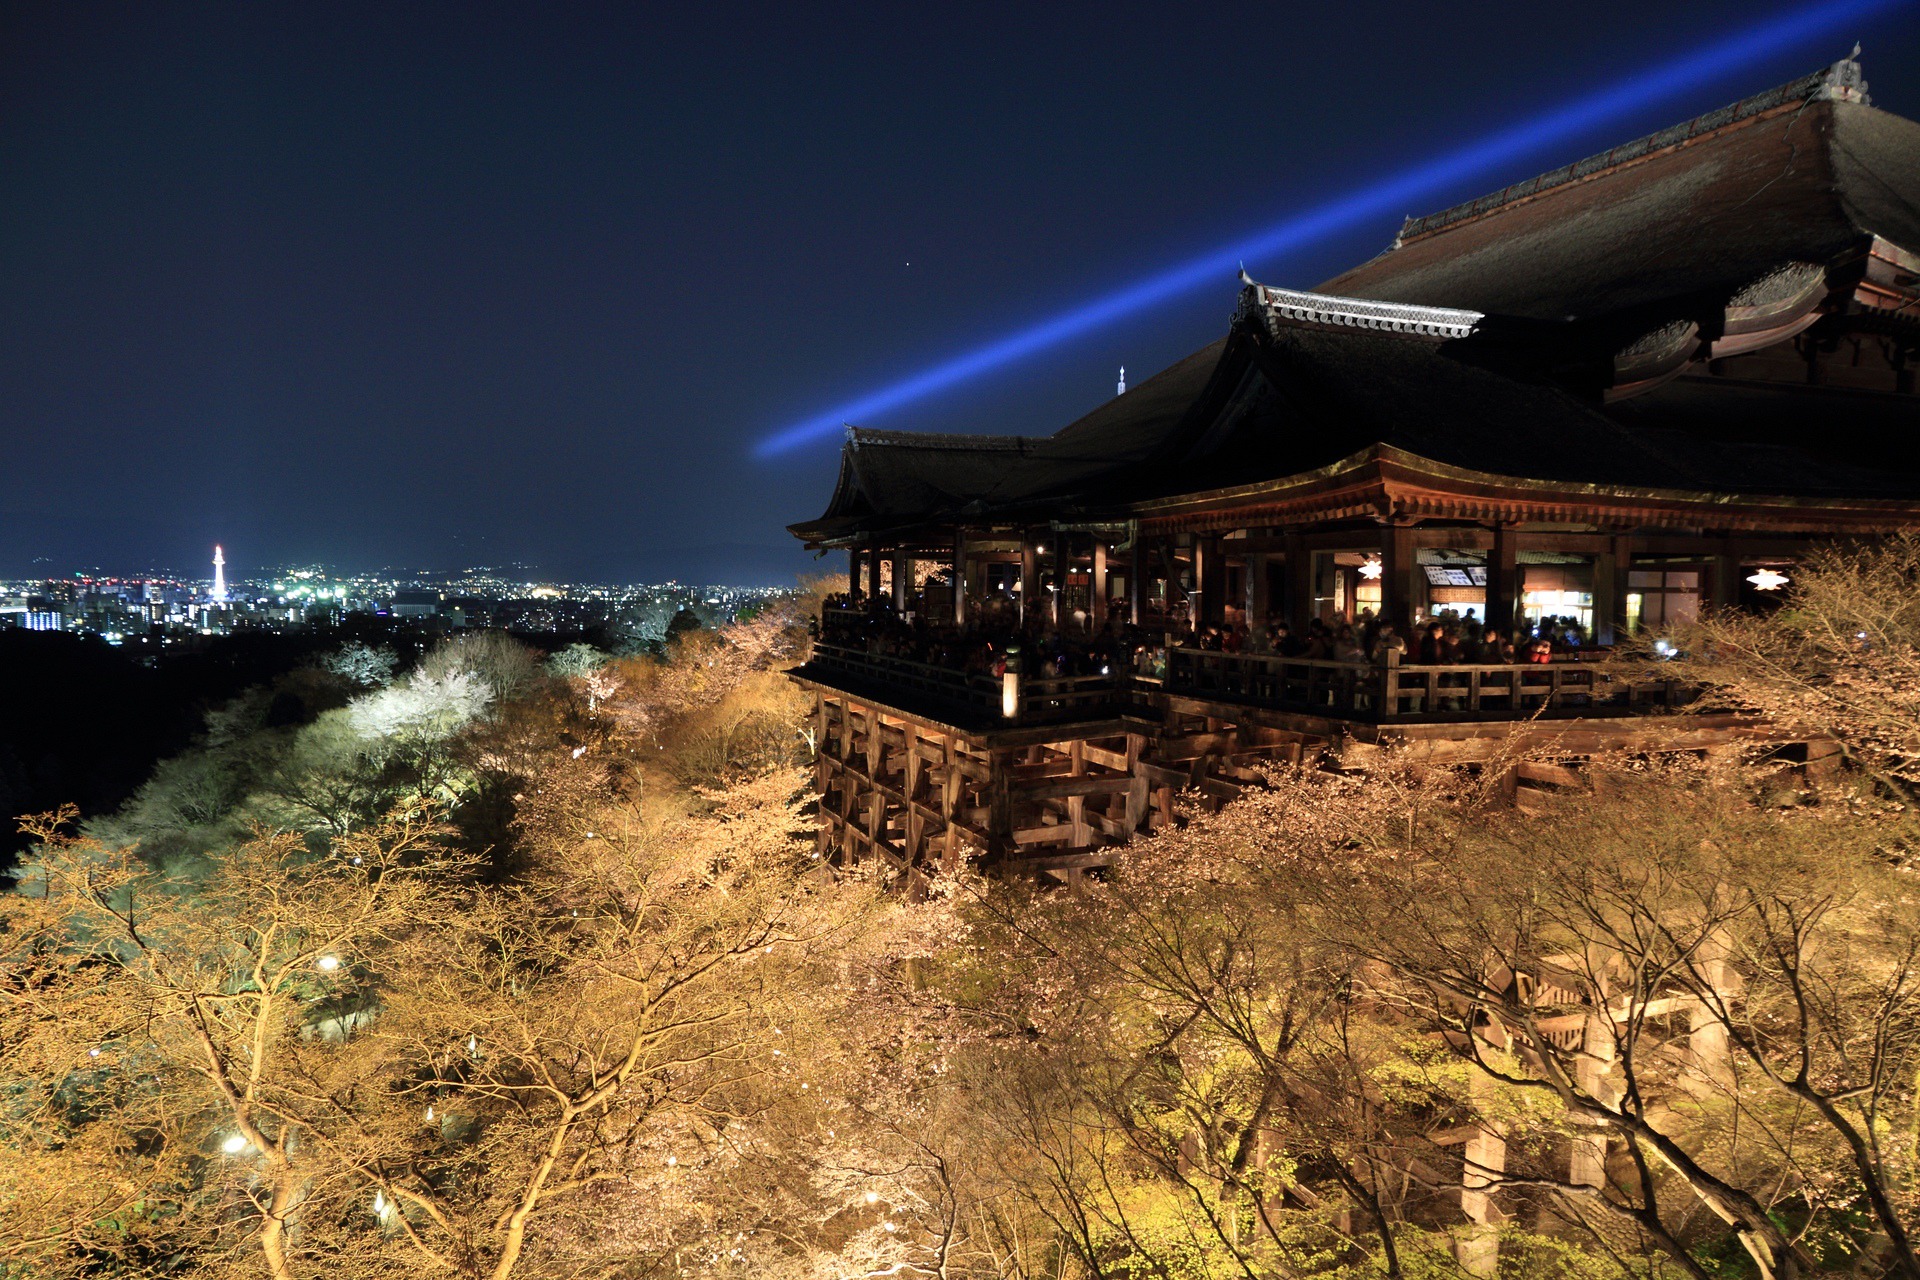 夜景 花火 イルミ 春の京都 清水寺ライトアップ 壁紙19x1280 壁紙館